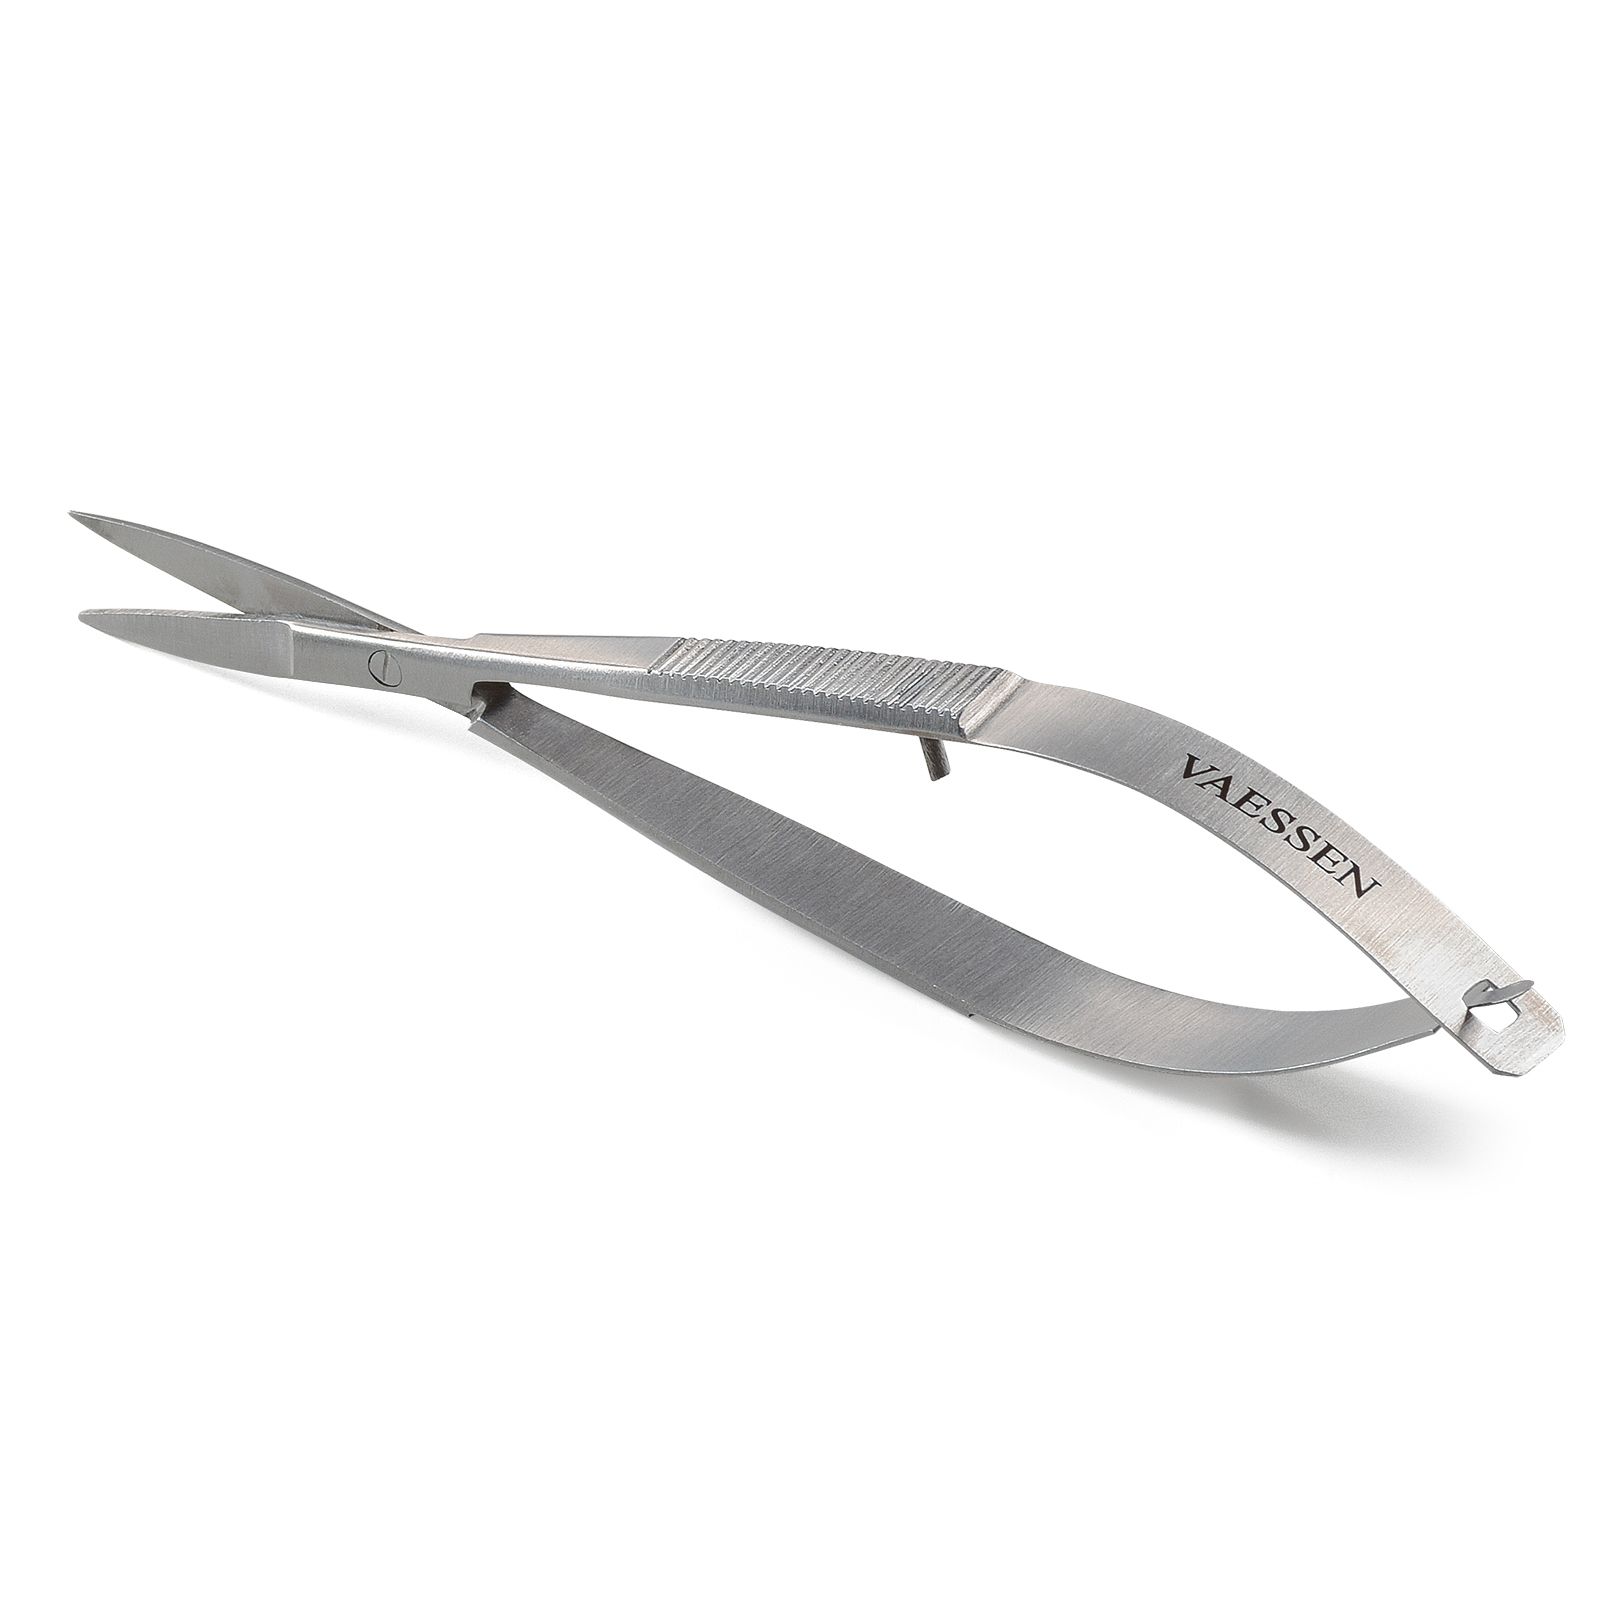 Vaessen Creative • Tweezer Scissors 120mm Straight